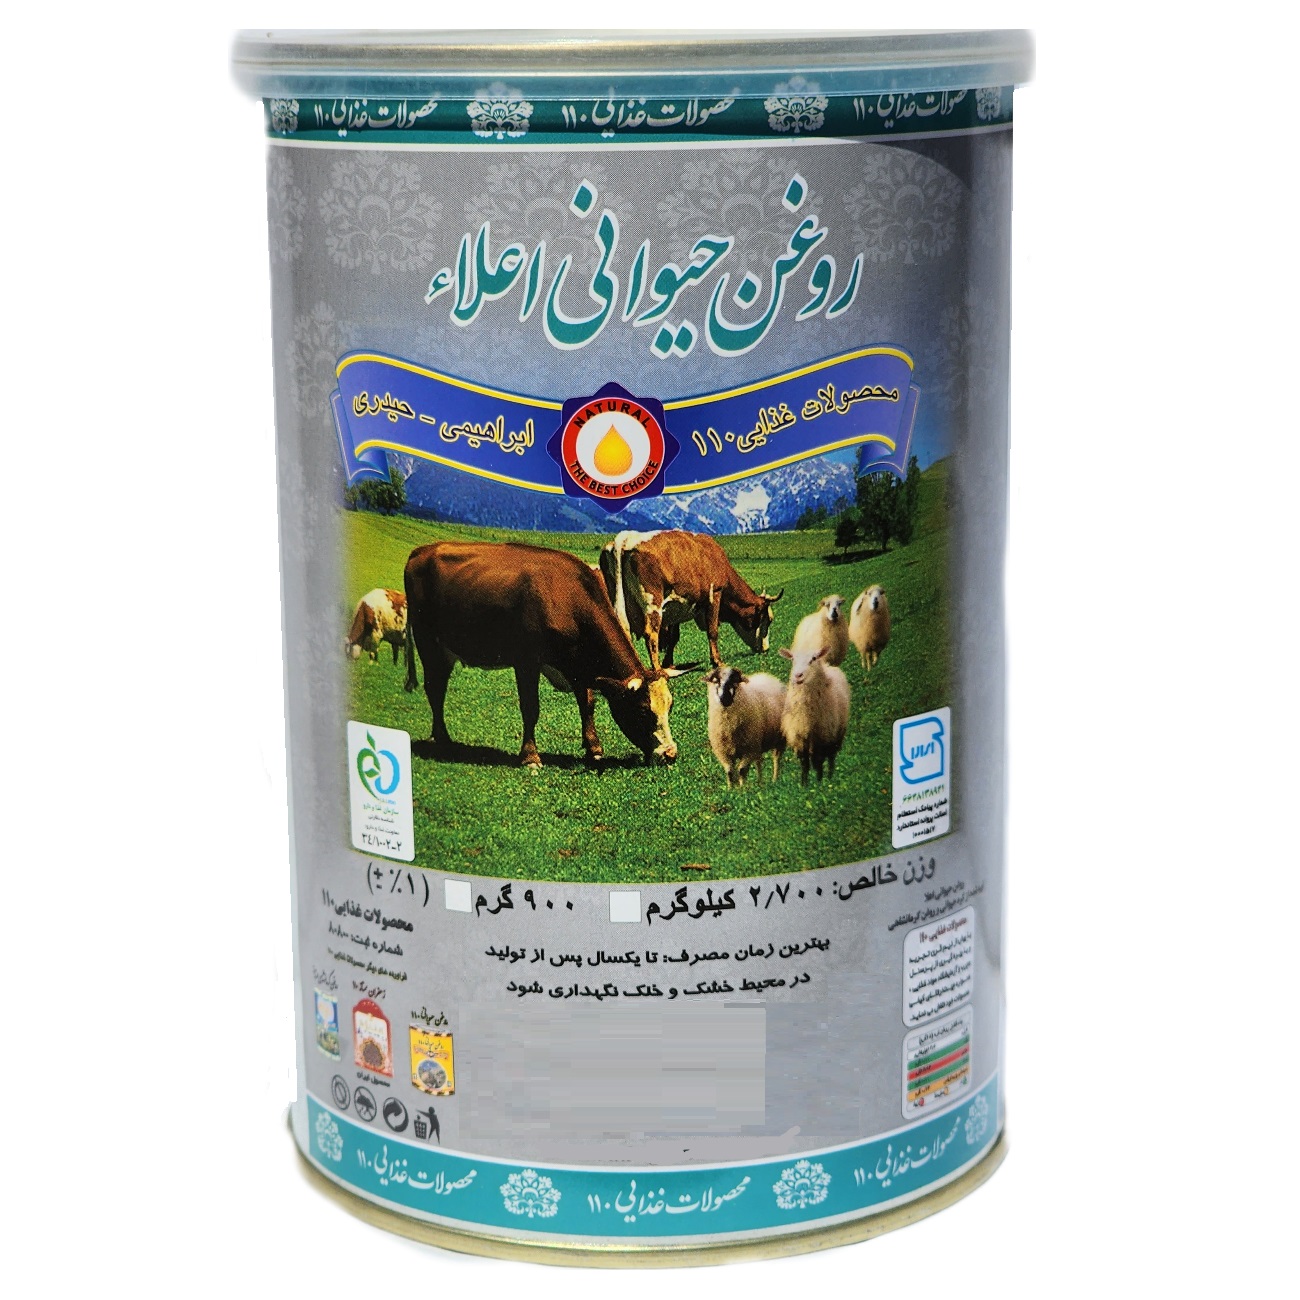 نکته خرید - قیمت روز روغن حیوانی کرمانشاهی گاوی و گوسفندی 110 - 900 گرم خرید